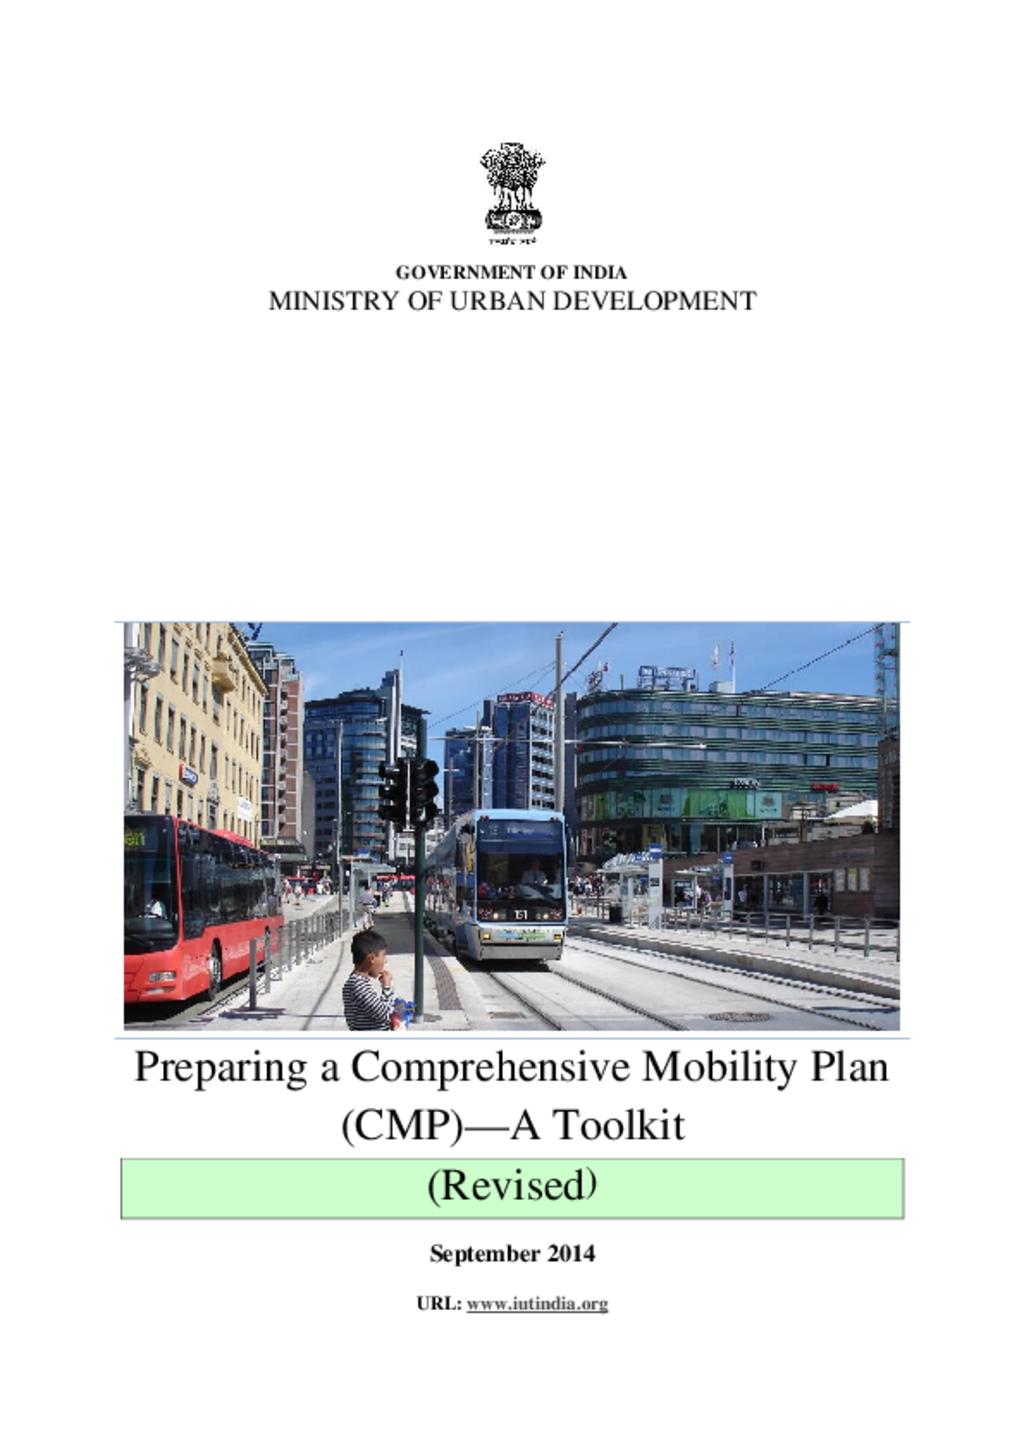 Mobility Plan